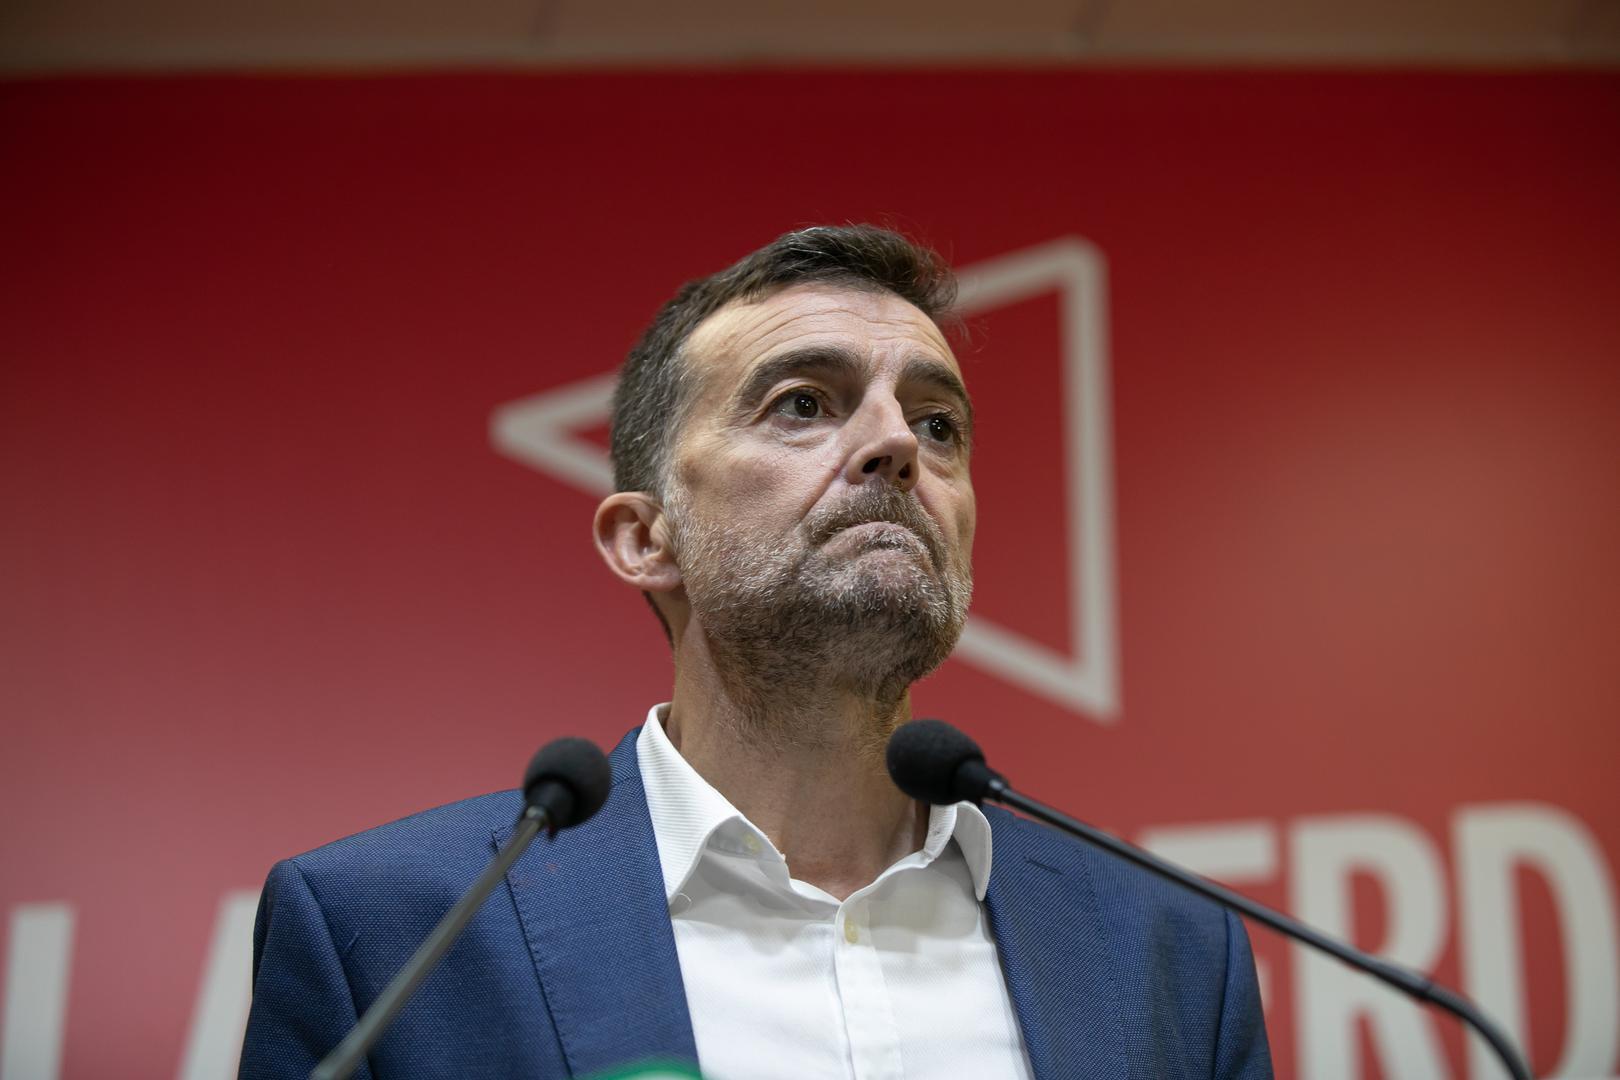 Antonio Maíllo no descarta disputar el liderazgo de Izquierda Unida a la ministra Sira Rego